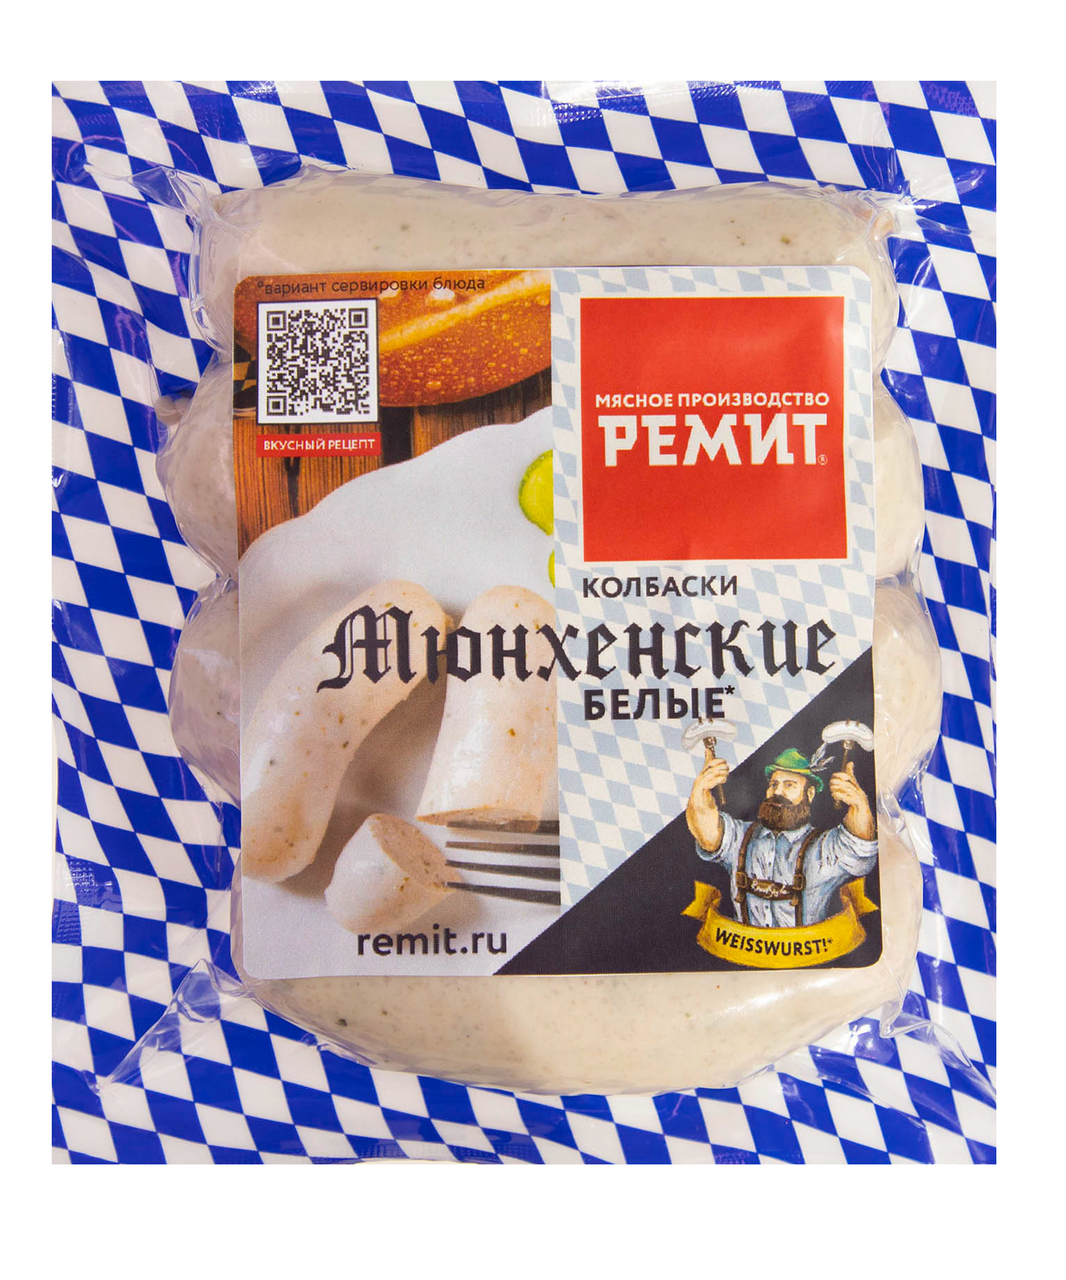 Белые мюнхенские колбаски «быль – не сказки», адаптированные российские